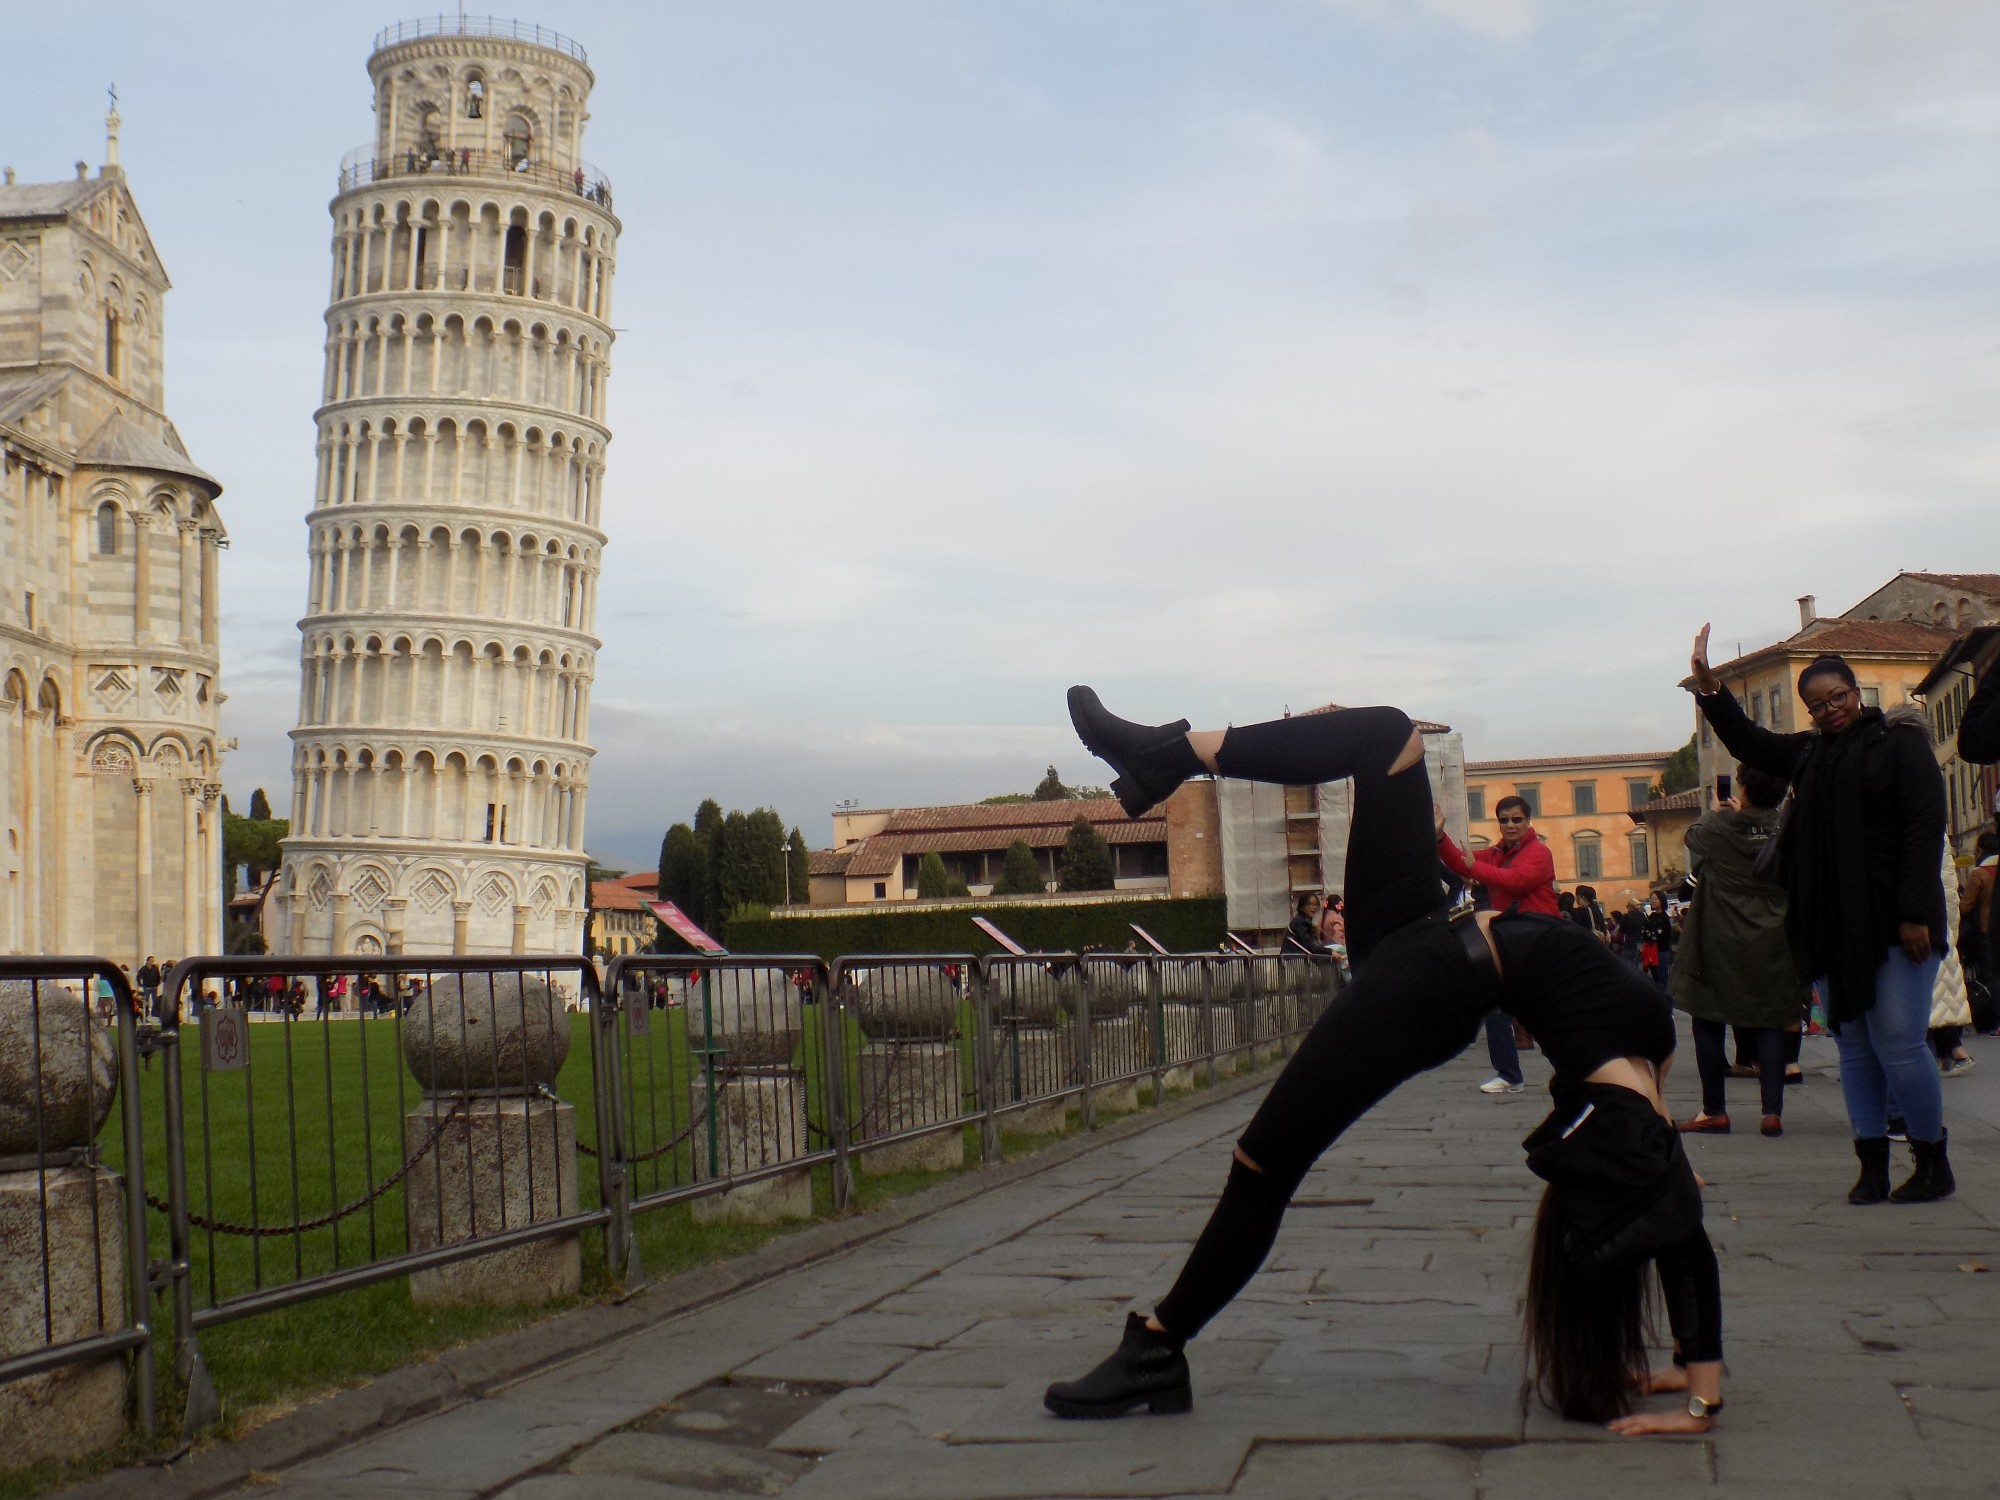 Больше самой Пизанской башни интересны попытки туристов необычно сфотографироваться с ней